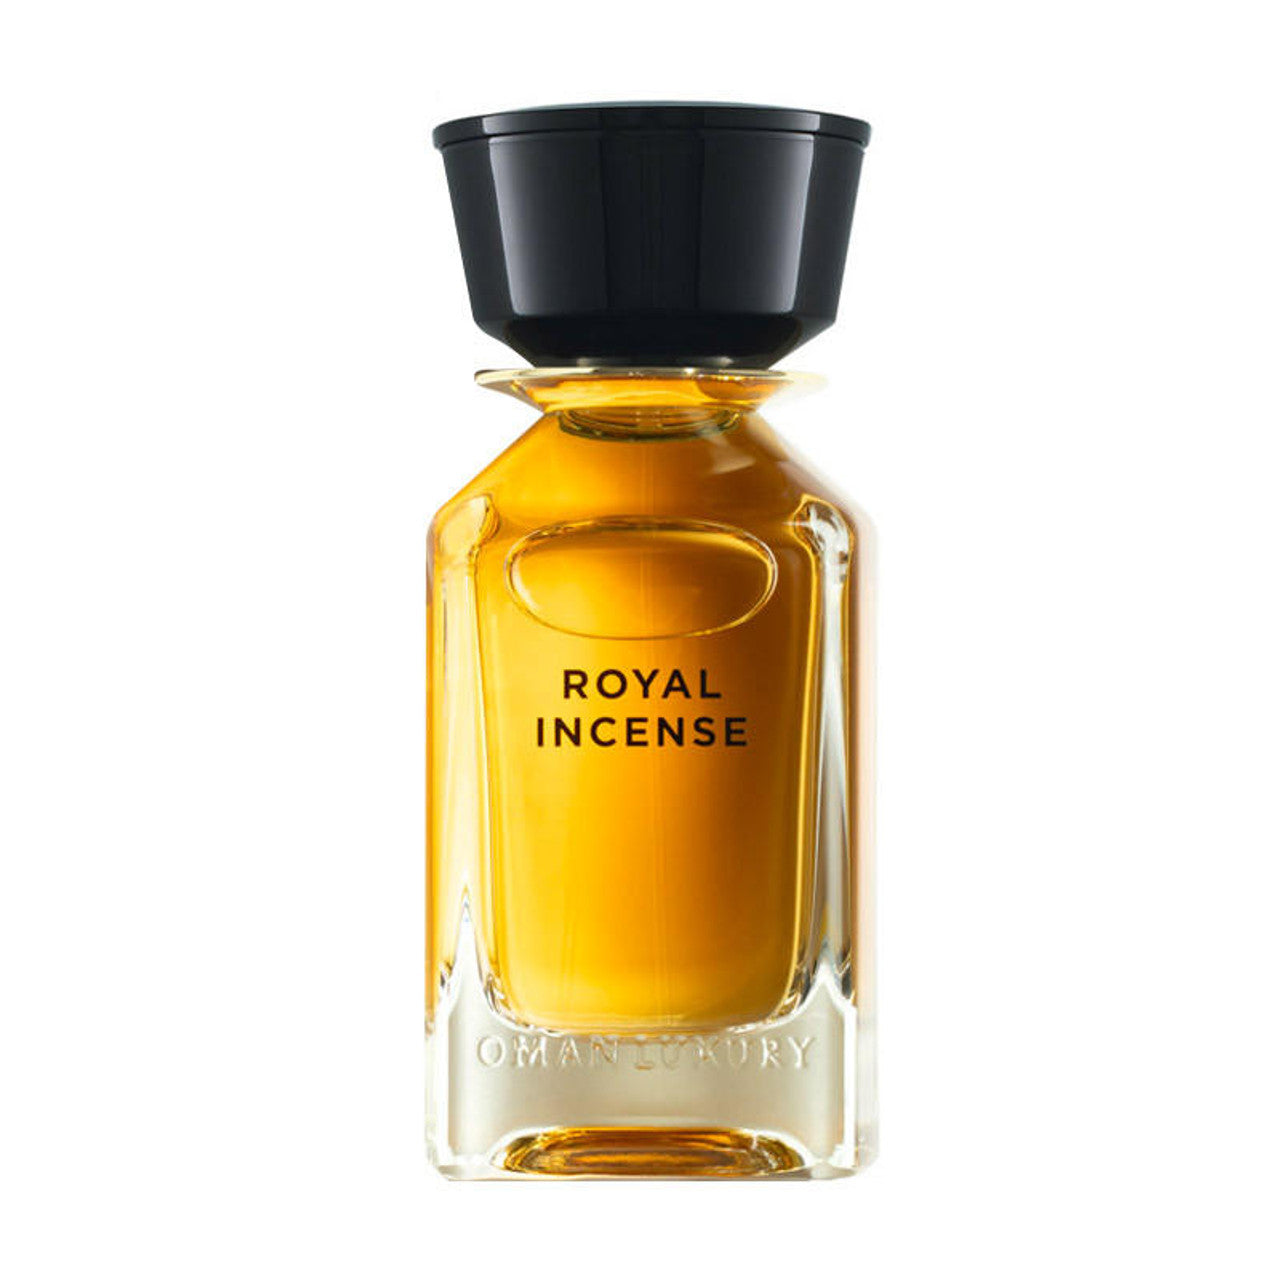 OMAN LUXURY Royal Incense Eau de Parfum 100 ML Royal Incense EDP 100ml OmanluxuryRoyal incense di Omanluxury, è un profumo ricco e fumoso, che affascinerà i tuoi sensi con miele, muschio, ambra e cuoio che si fonderà con la tua pelle. Una fragranza ispira